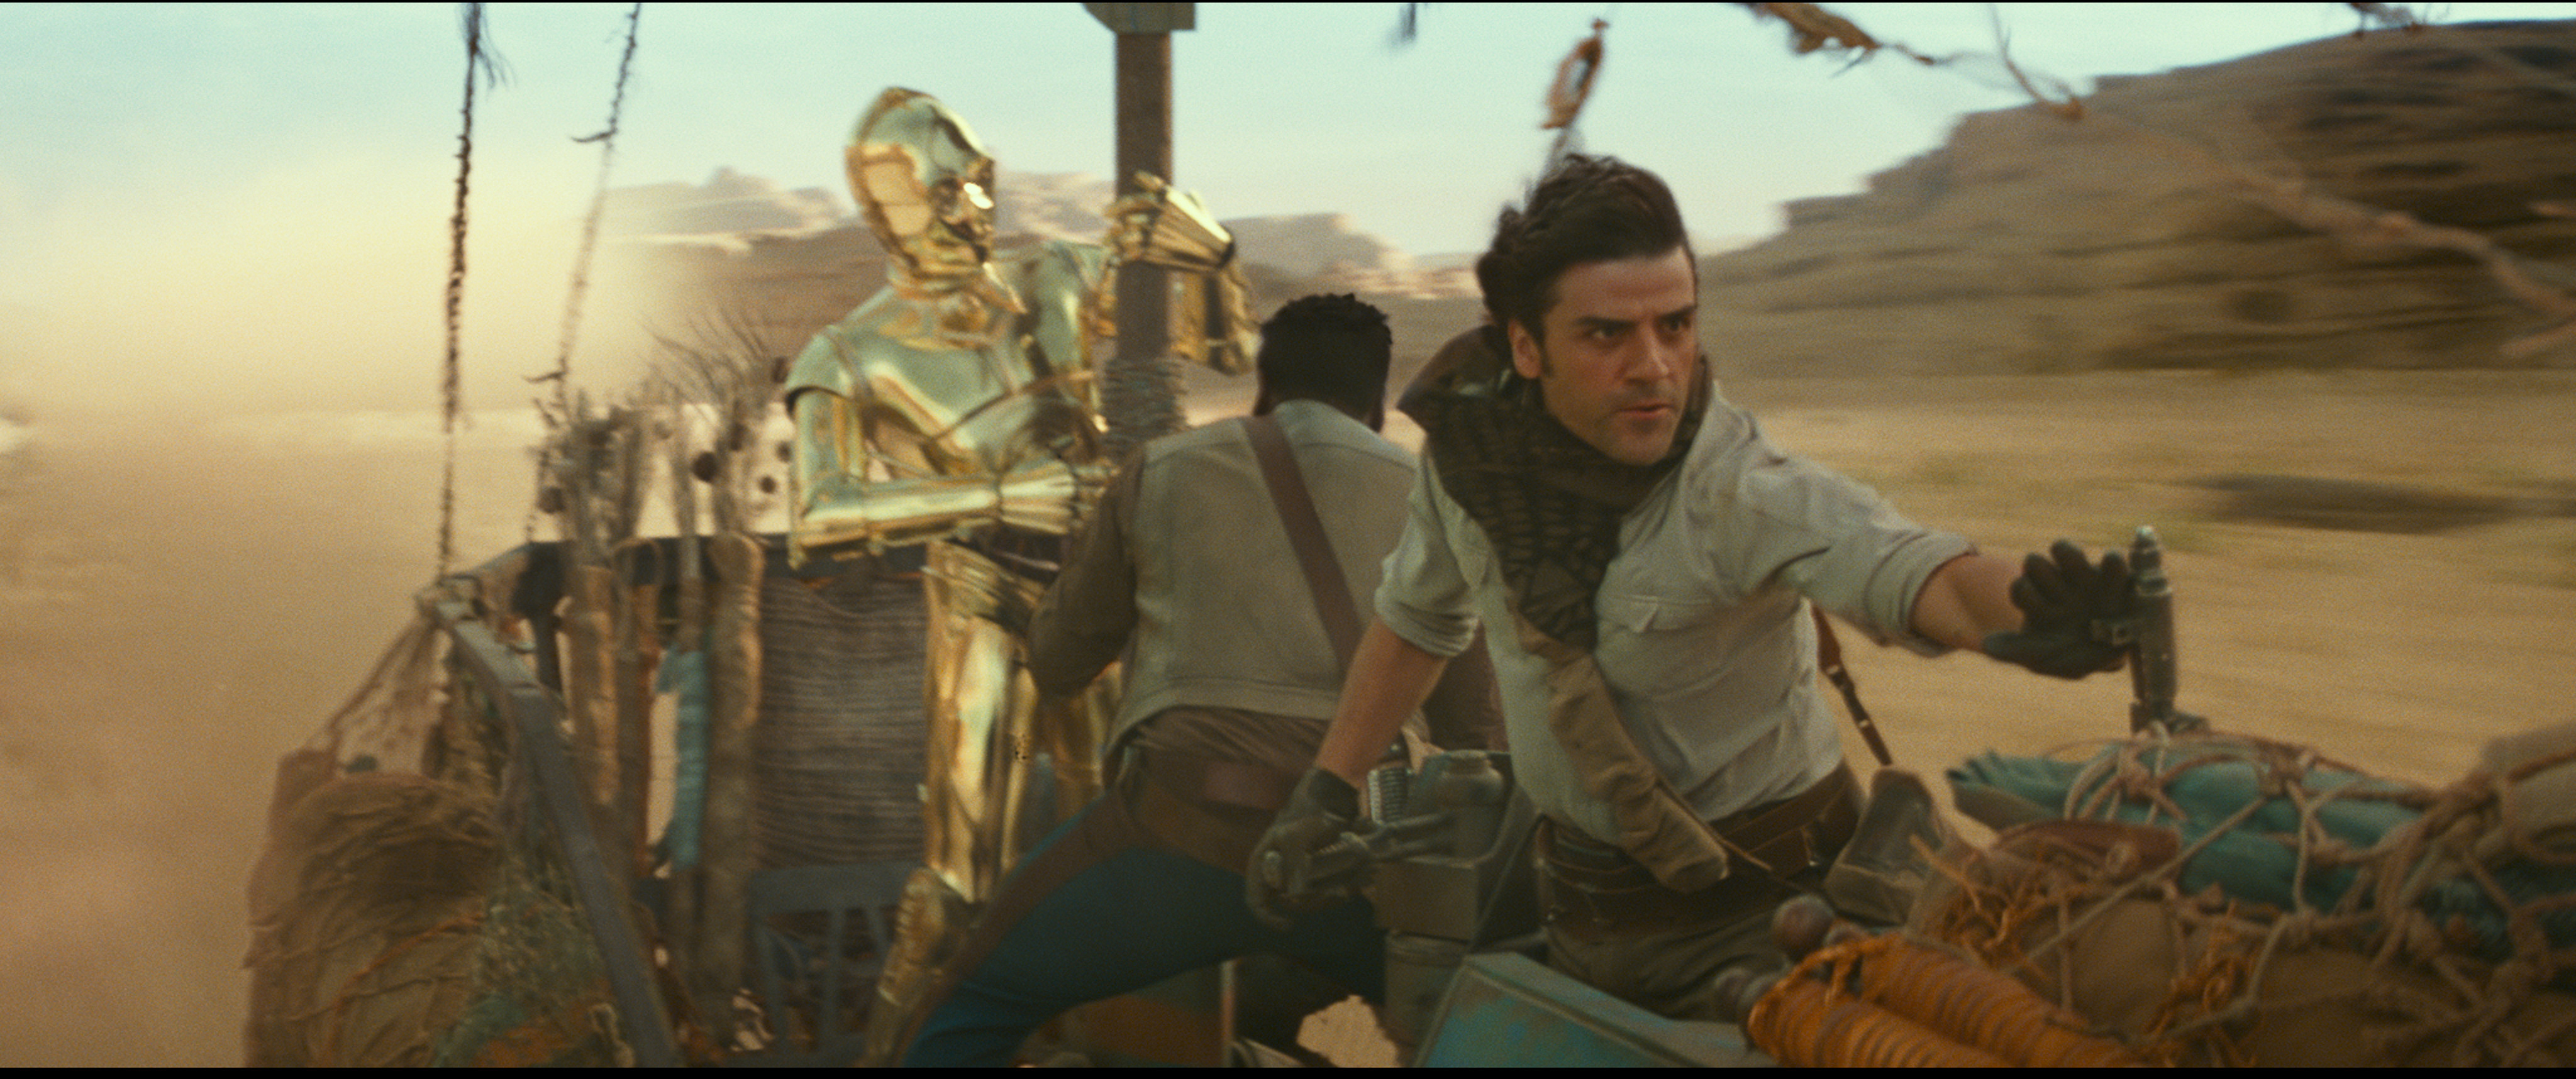 Die Filmfiguren Finn, gespielt von John Boyega, und Poe, gespielt von Oscar Isaac, mit C3PO auf einem Gefährt.